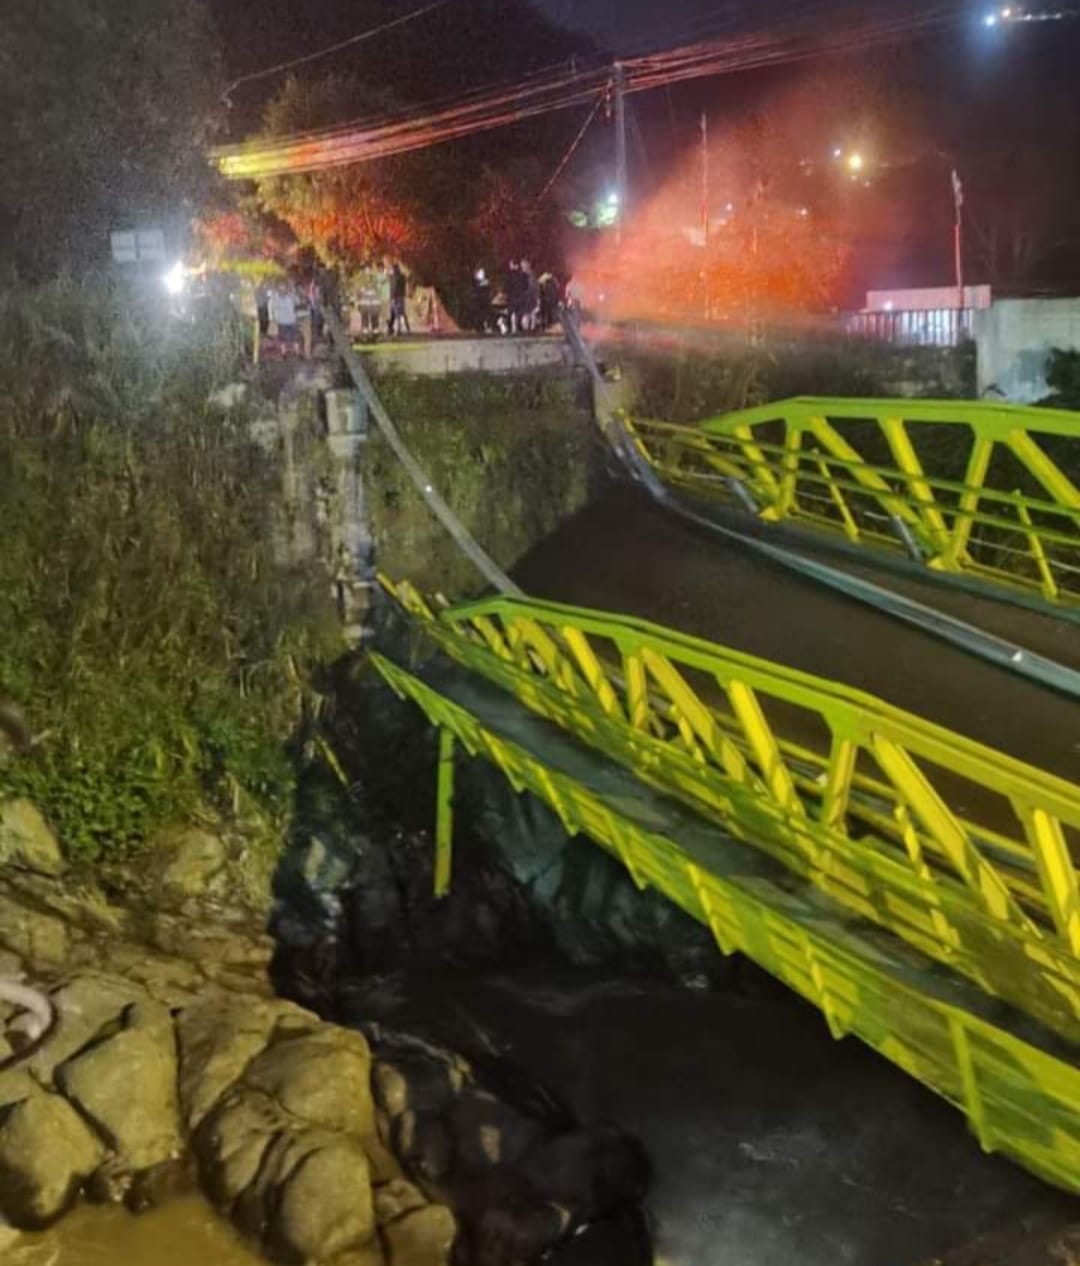 MOPT corre para instalar nueva estructura tras colapso de “Puente Negro” en Orosi: puente fue reparado hace un año